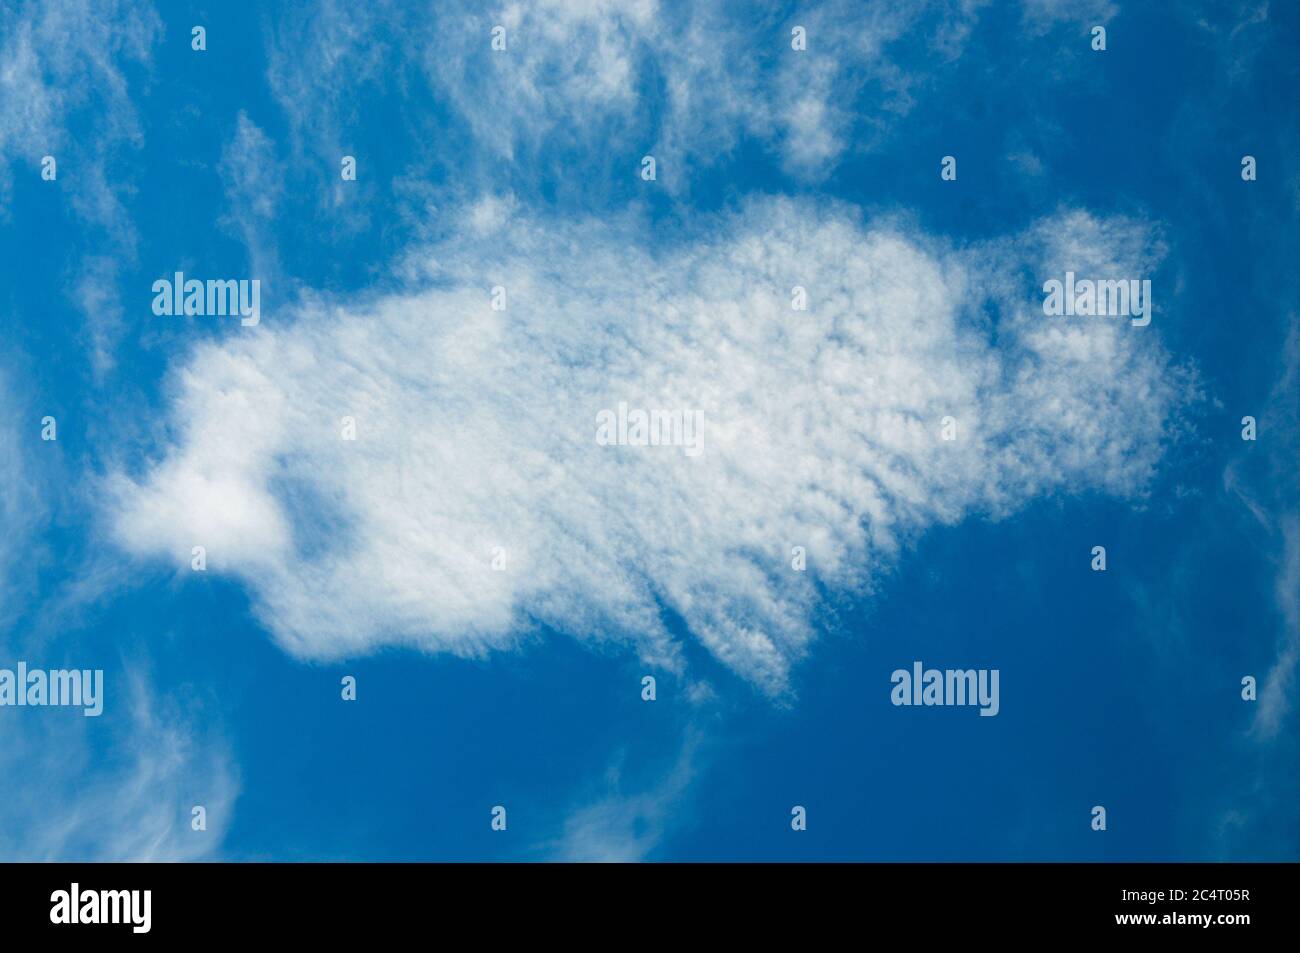 Portland. 29 juin 2020. Météo Royaume-Uni. Ciel bleu au-dessus de l'île de Portland avec un nuage ressemblant à un coelacanthe ou 'lungfish'. Crédit : stuart fretwell/Alay Live News Banque D'Images